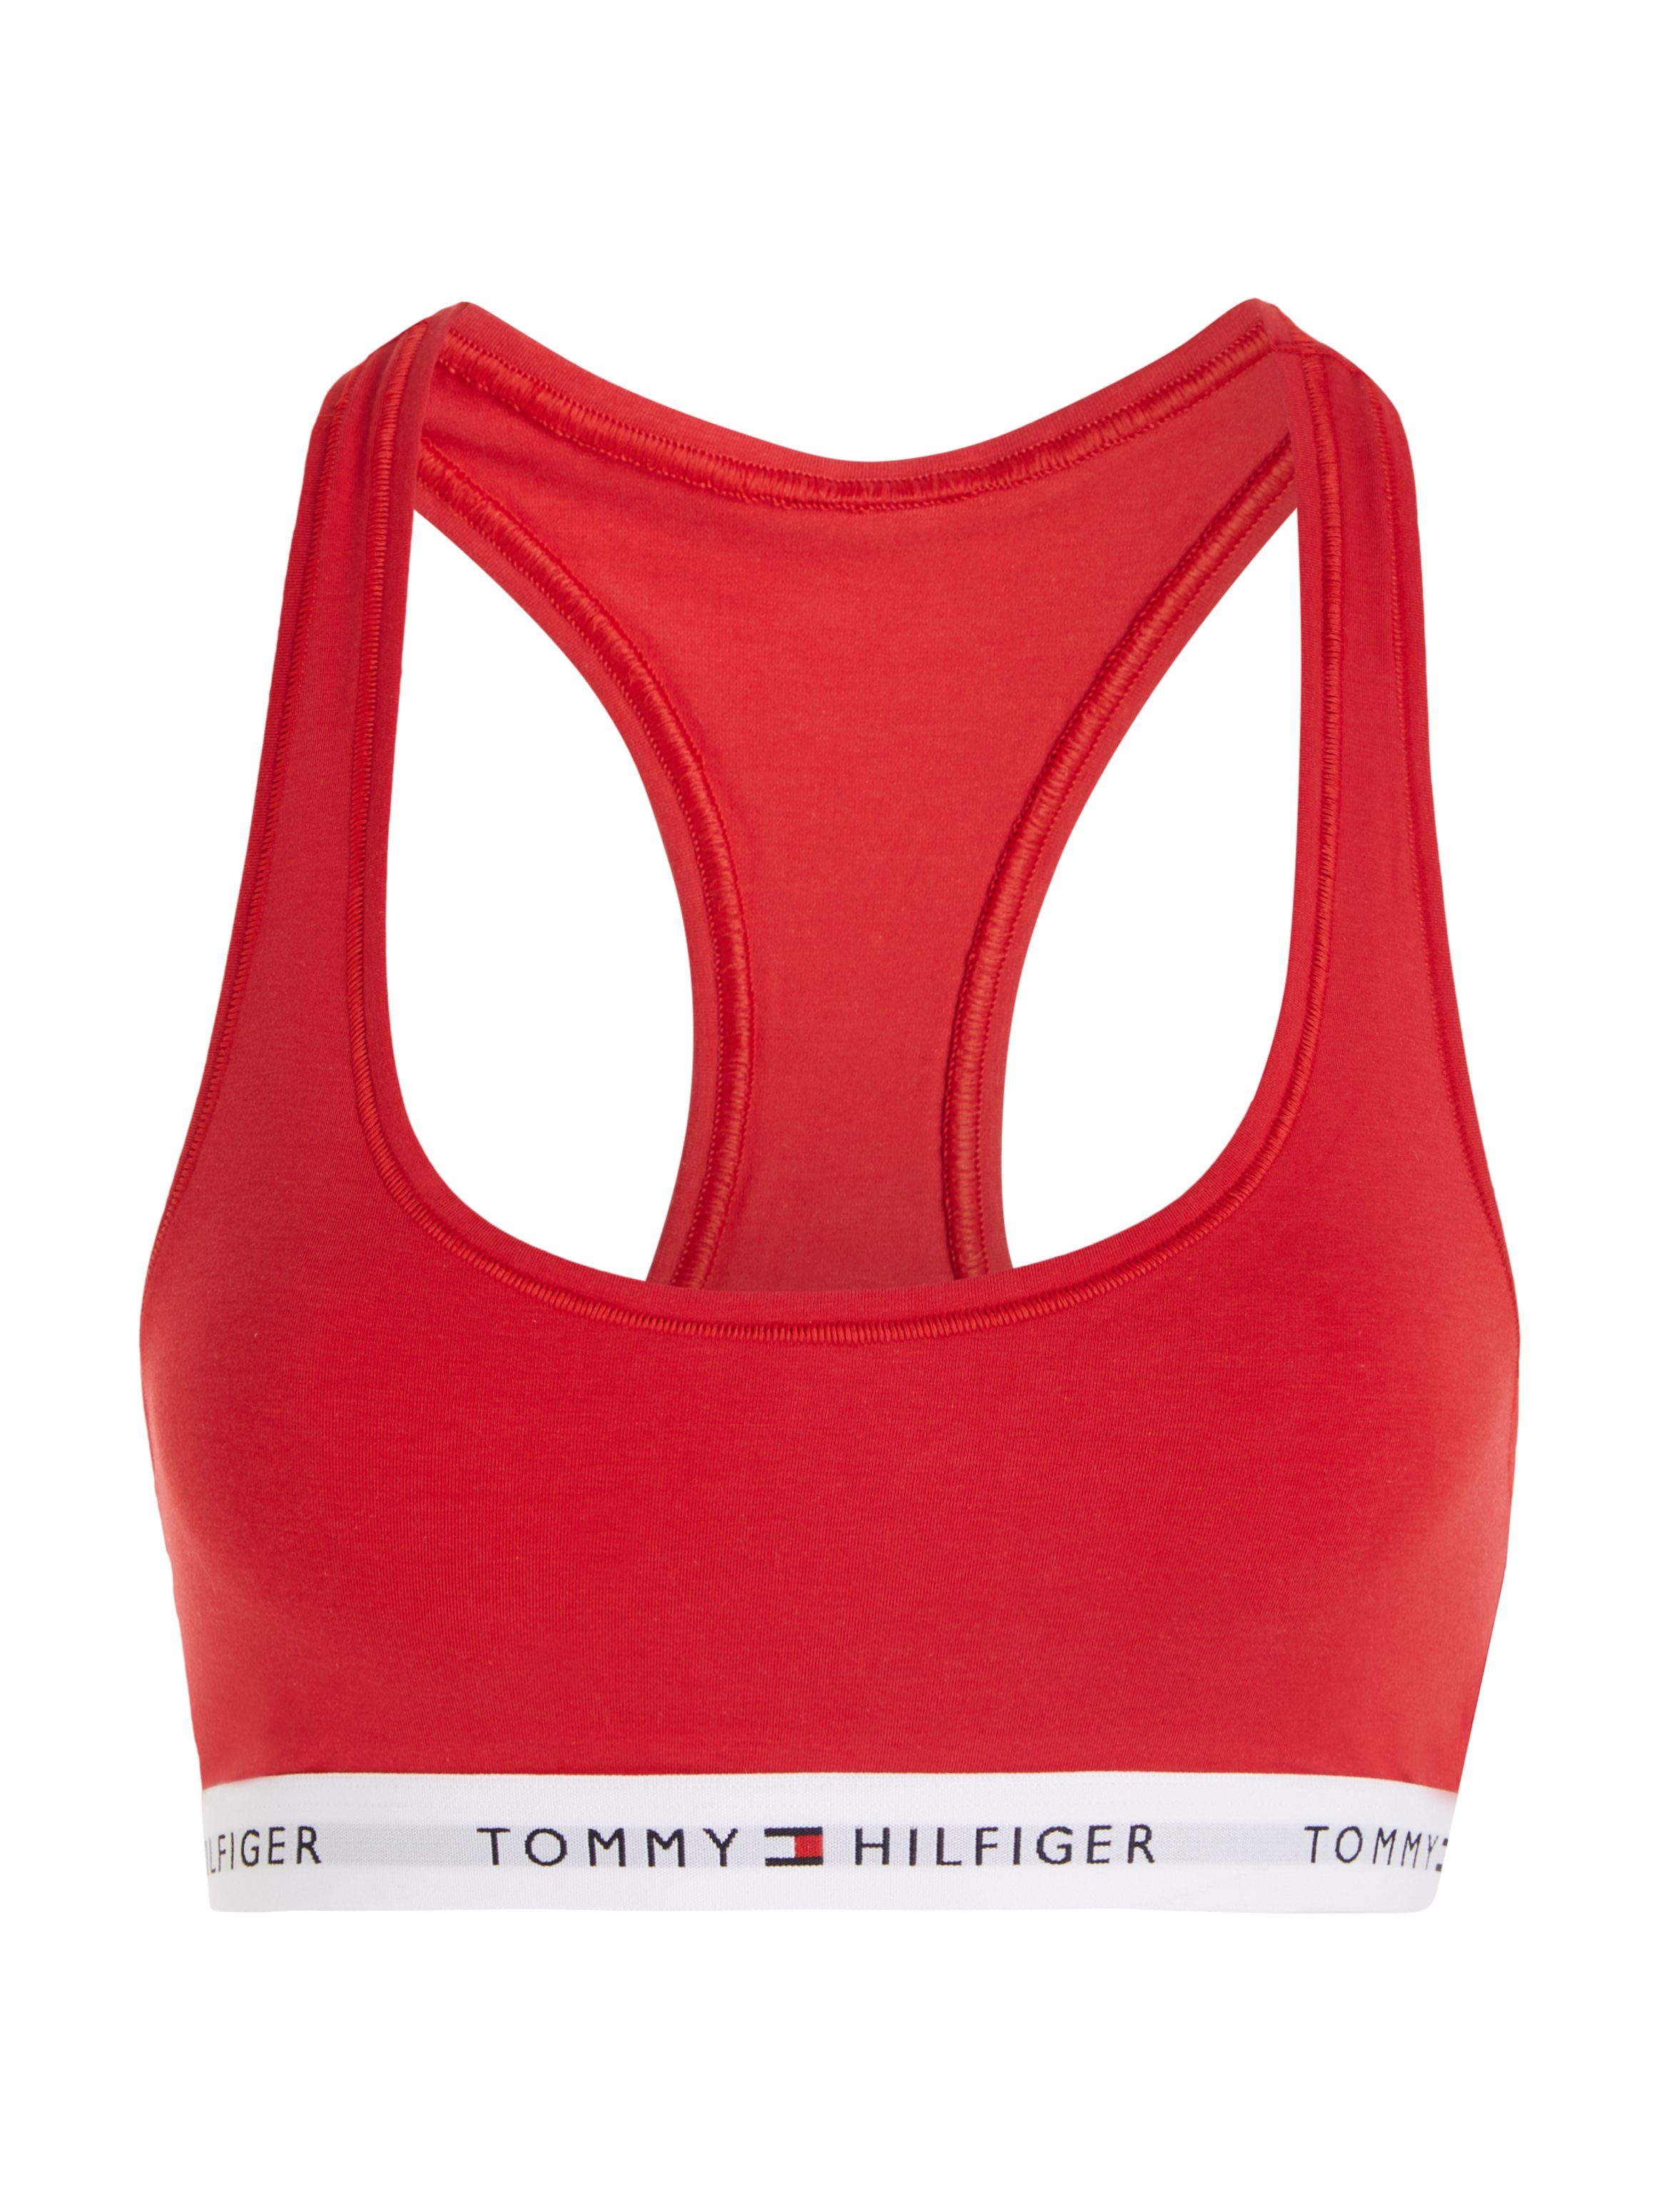 mit Sport-Bustier Underwear Hilfiger auf dem Red Hilfiger Primary Tommy Unterbrustband Schriftzügen Tommy